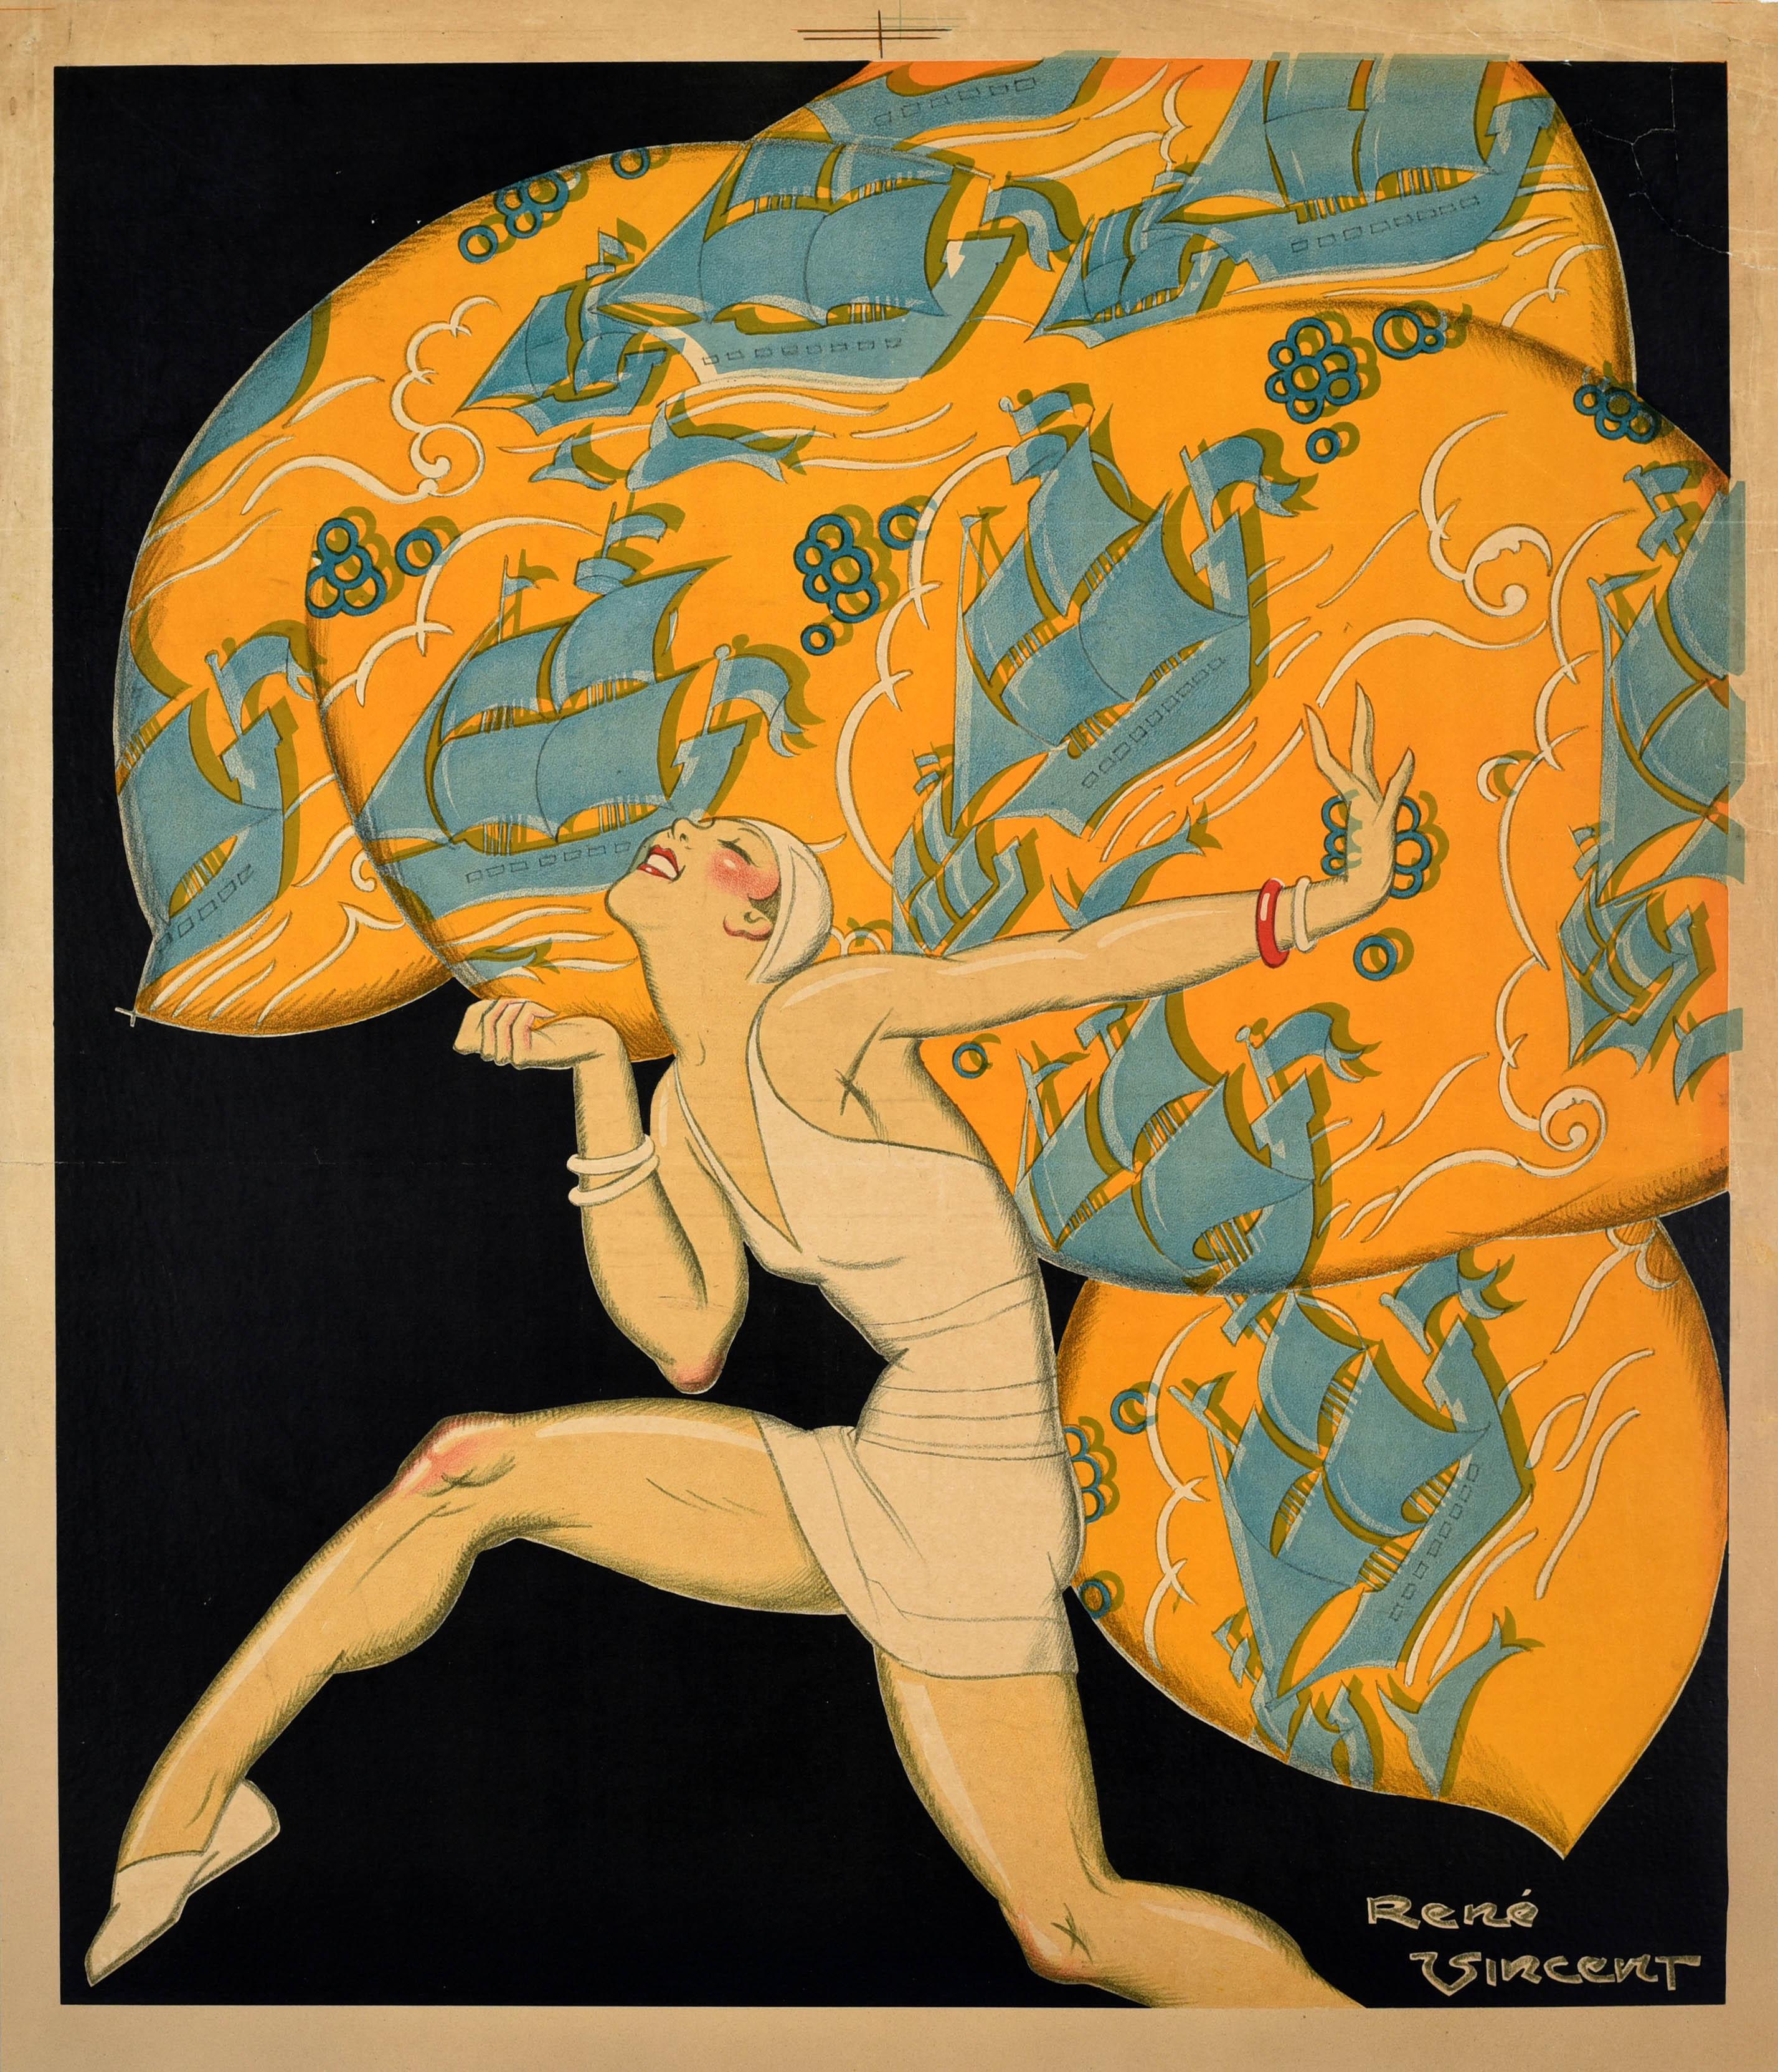 Originales antikes Plakat mit einem atemberaubenden Entwurf des einflussreichen französischen Art-Déco-Illustrators Rene Vincent (1879-1936), der eine lächelnde Dame im modischen Badeanzug zeigt, die vor einem gelben Muster mit blauen Segelschiffen